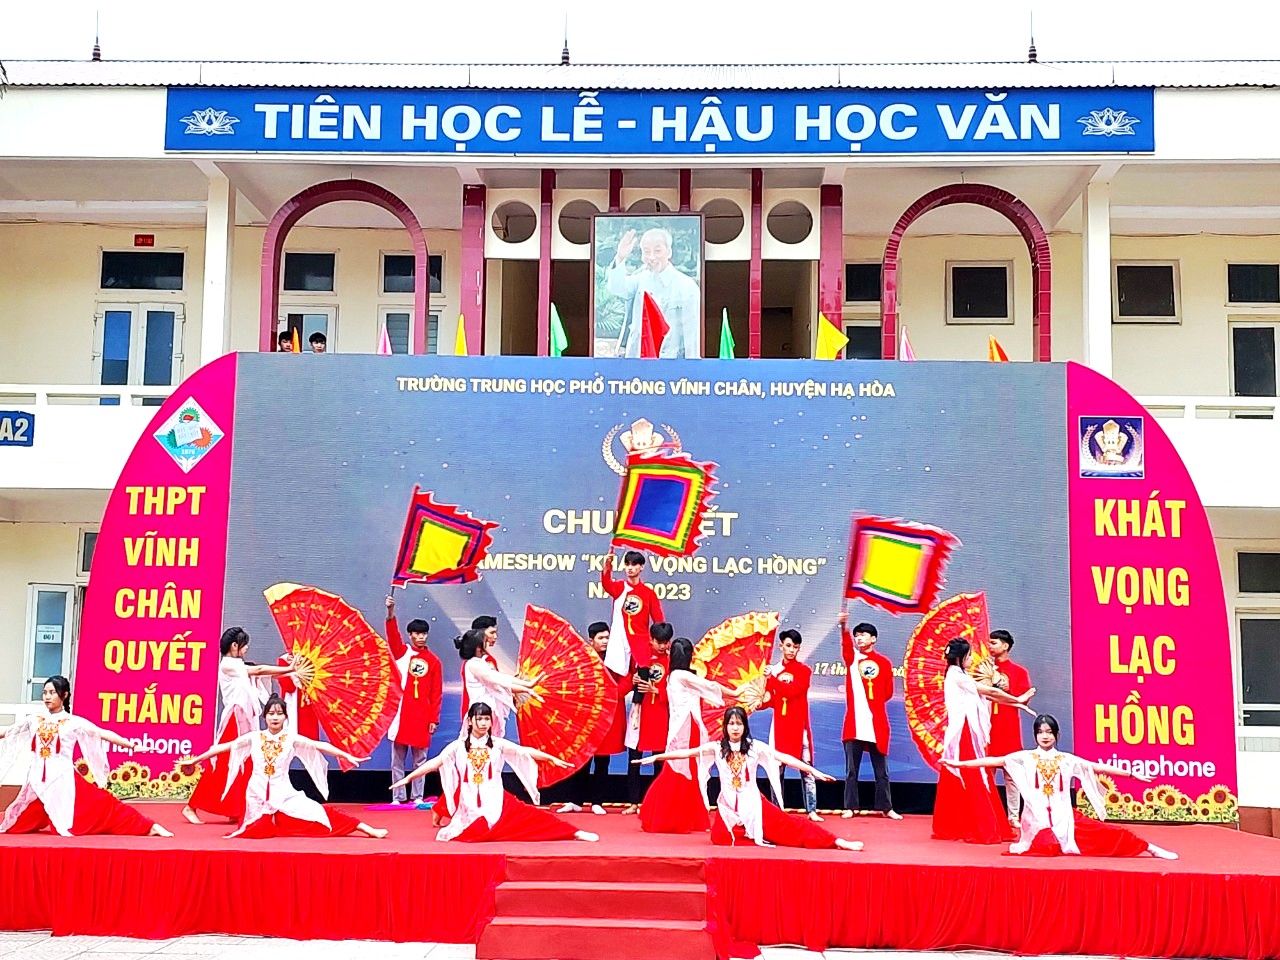 "Khát vọng Lạc Hồng”: Sân chơi trí tuệ dành cho học sinh THPT tỉnh Phú Thọ